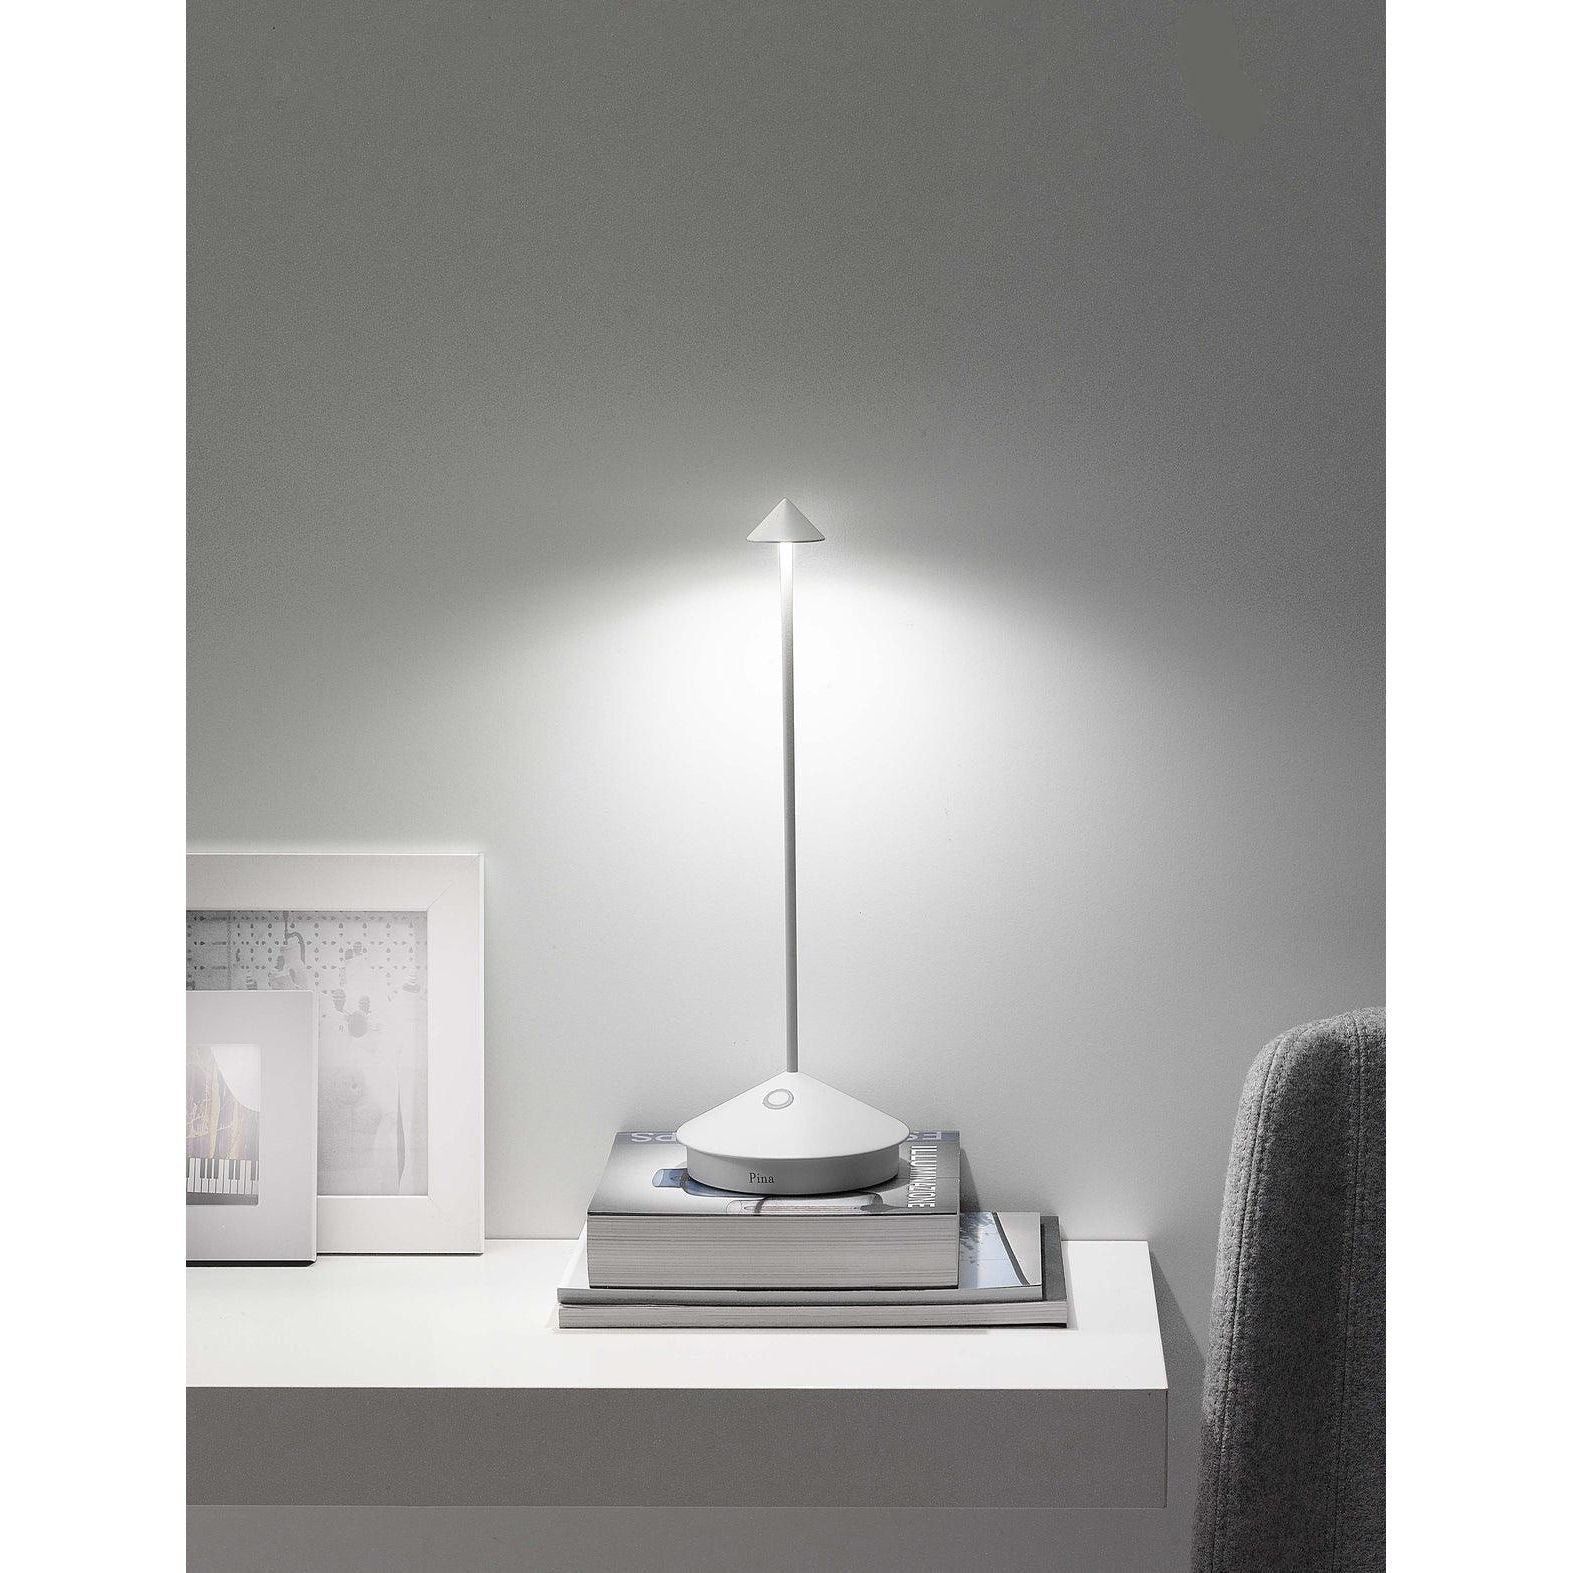 BESTA - Lampe de Bureau LED, Avec porte-stylo, sans fil, à